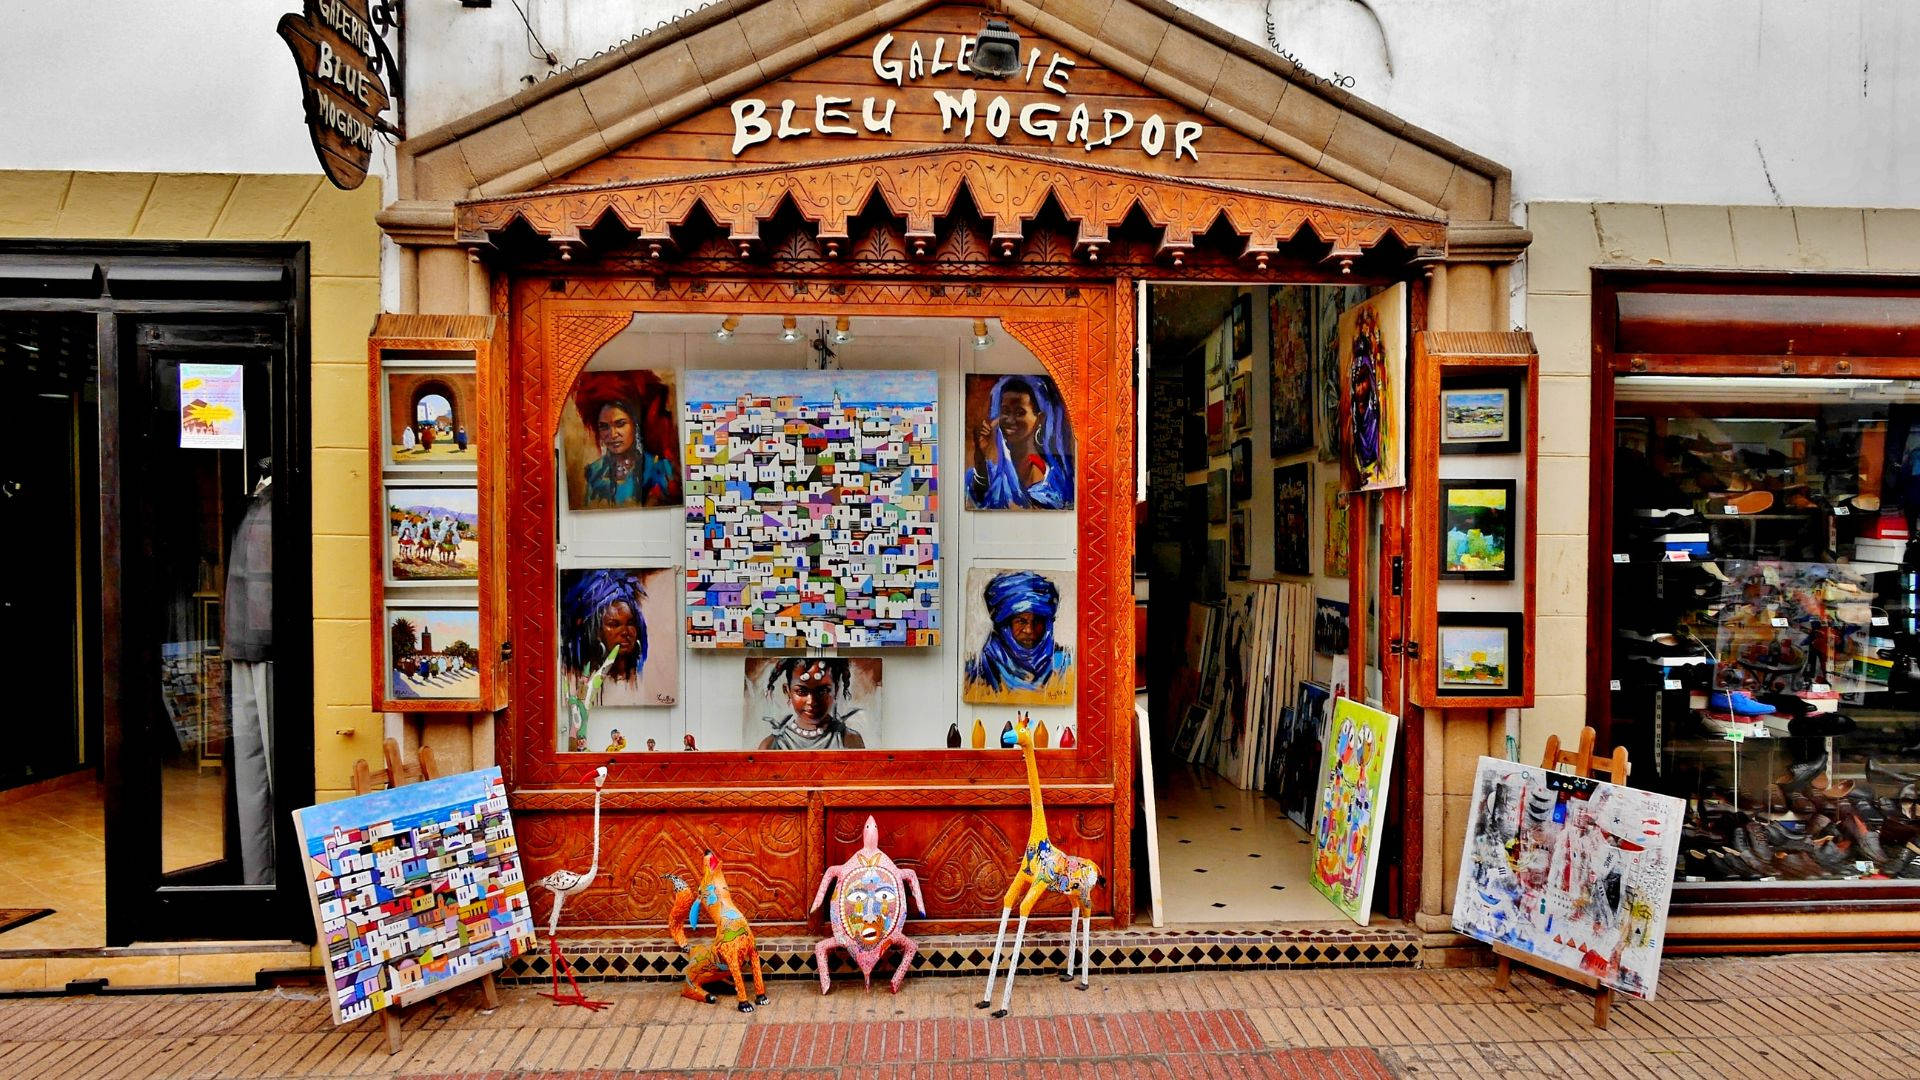 Galerieshop Bleu Mogador Marokko Wallpaper